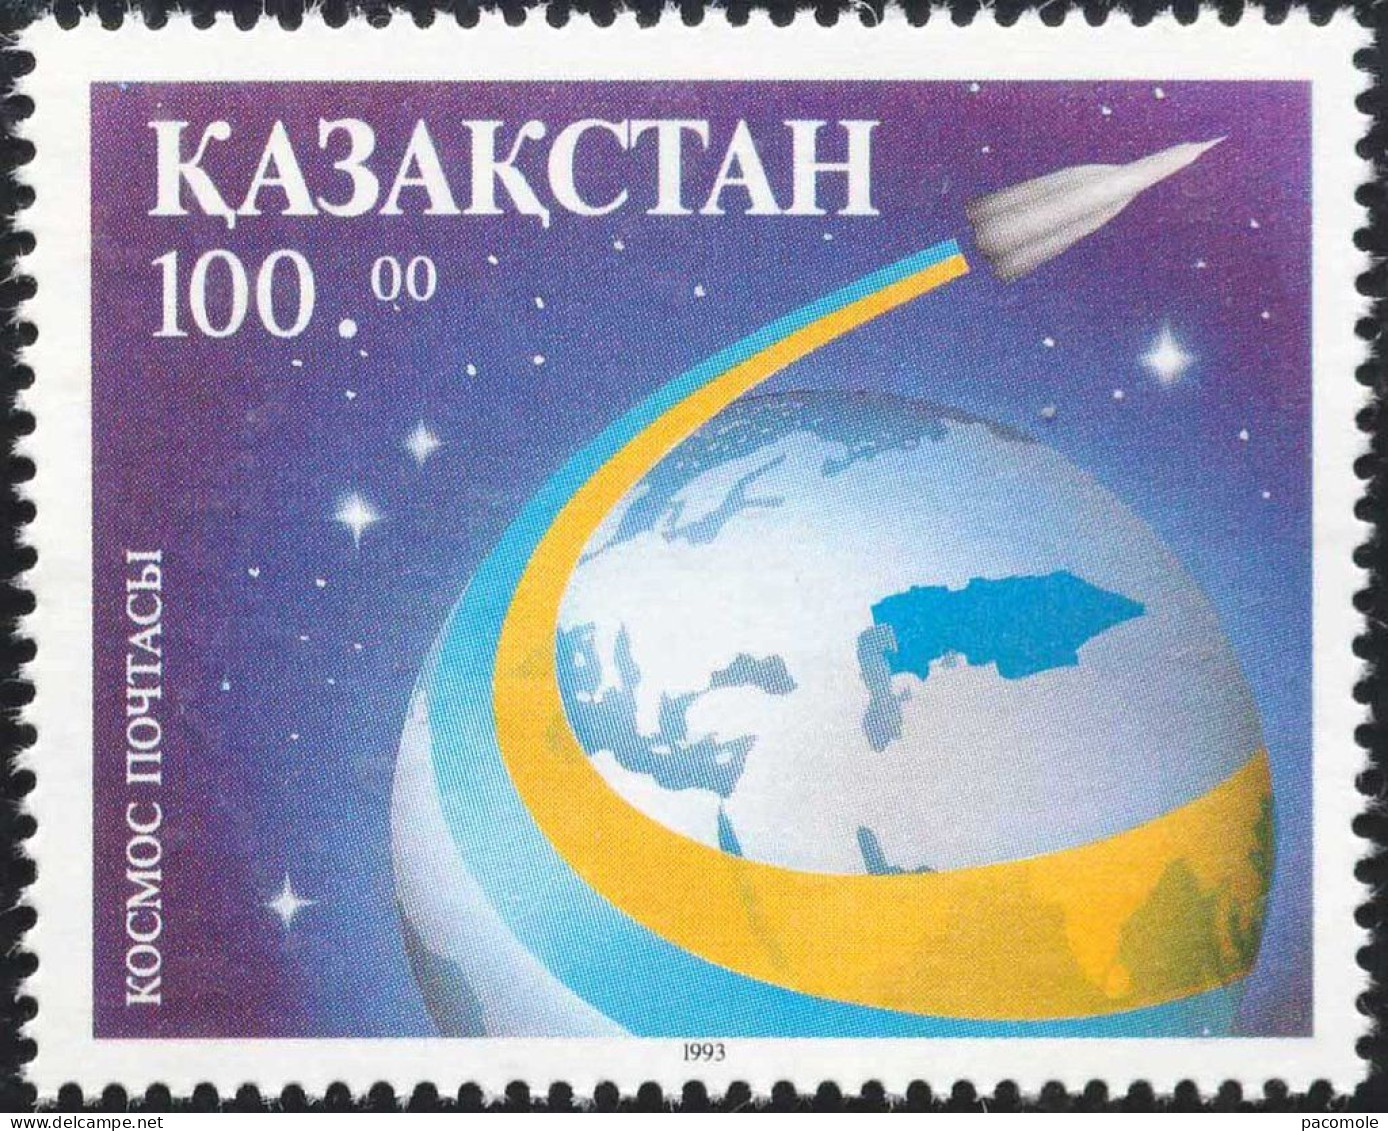 Kazakhstan - 1993 - Espace - Kazakhstan